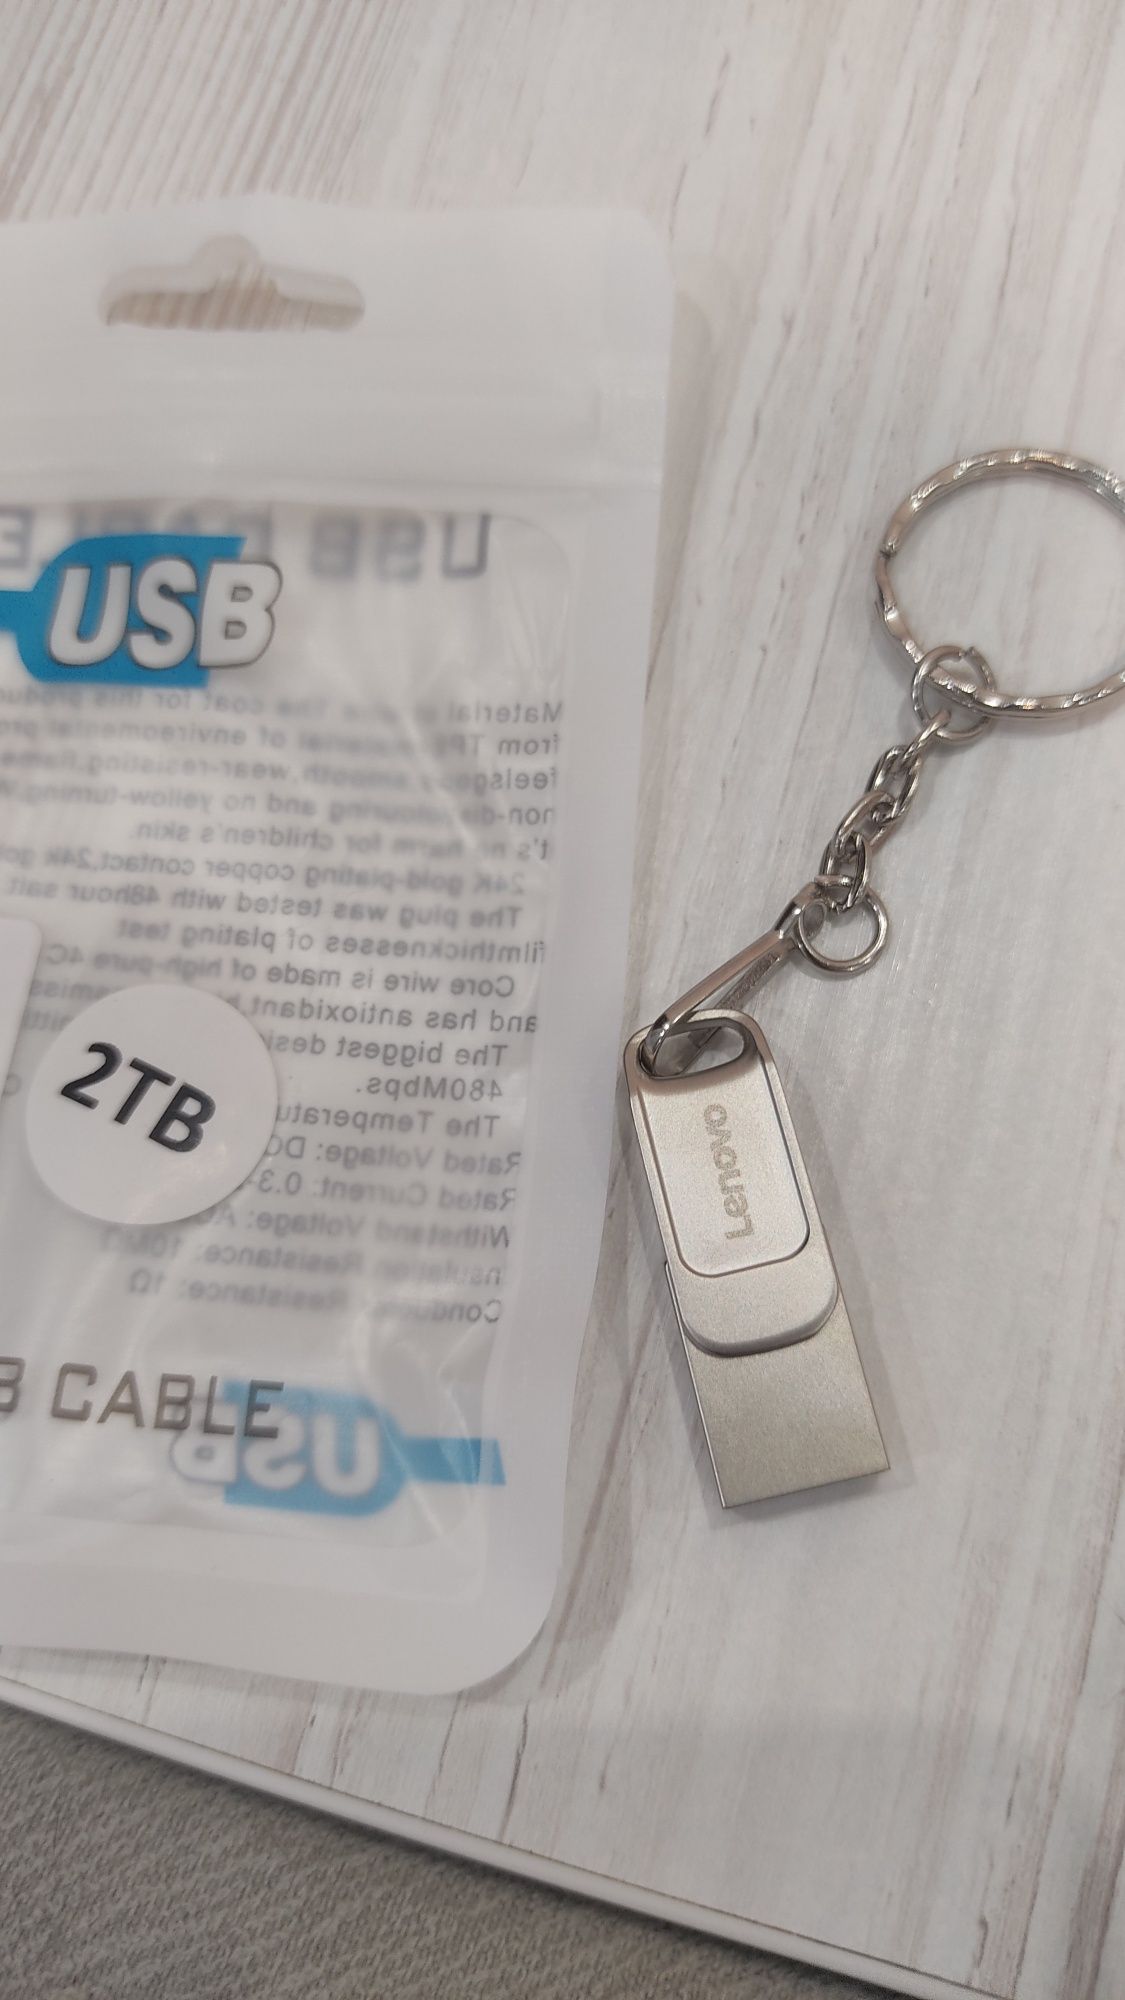 Флешка USB 3.0 Tape C 2Tb